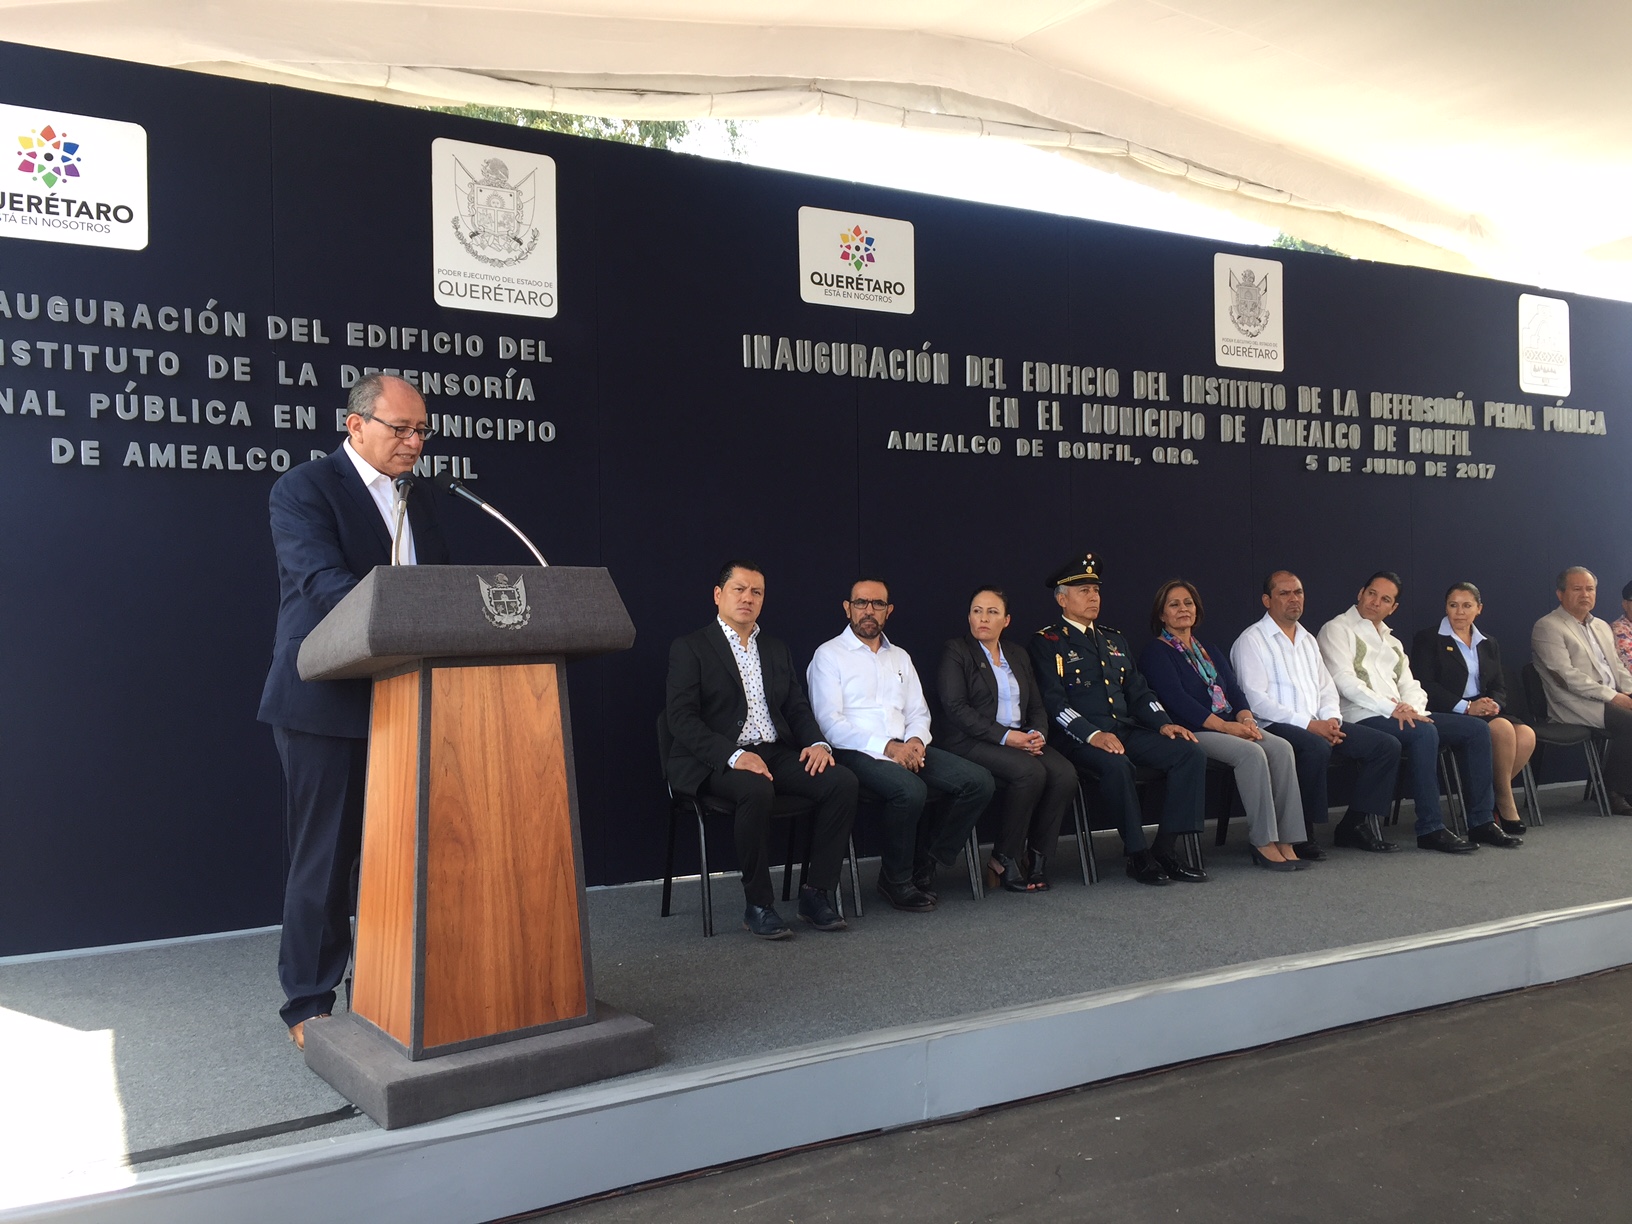  Con inversión de 7 mdp, inauguran Instituto de la Defensoría Penal Pública en Amealco